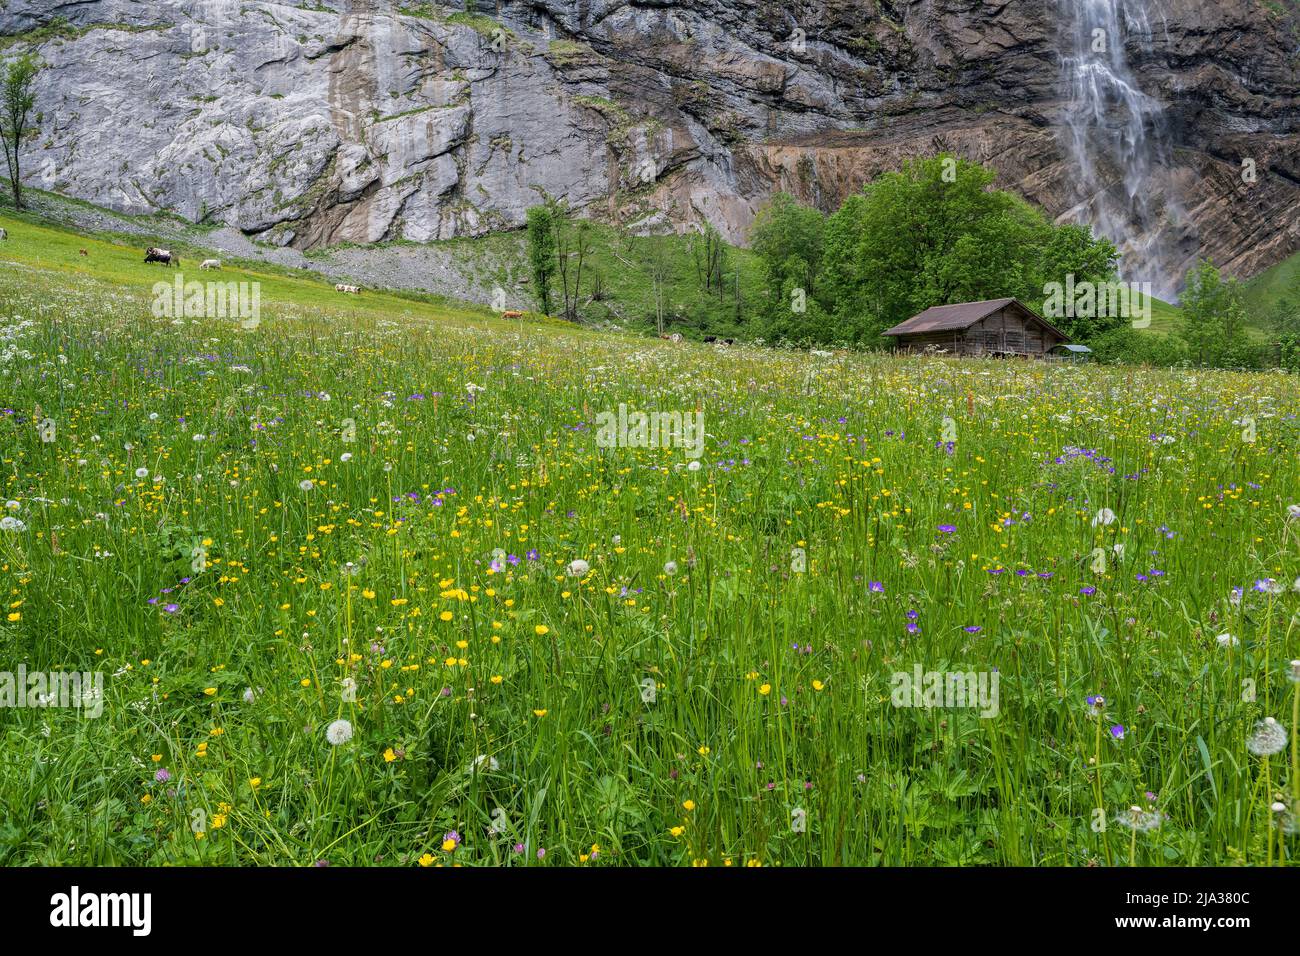 Cascade de Staubbach, Lauterbrunnen, canton de Berne, Suisse Banque D'Images